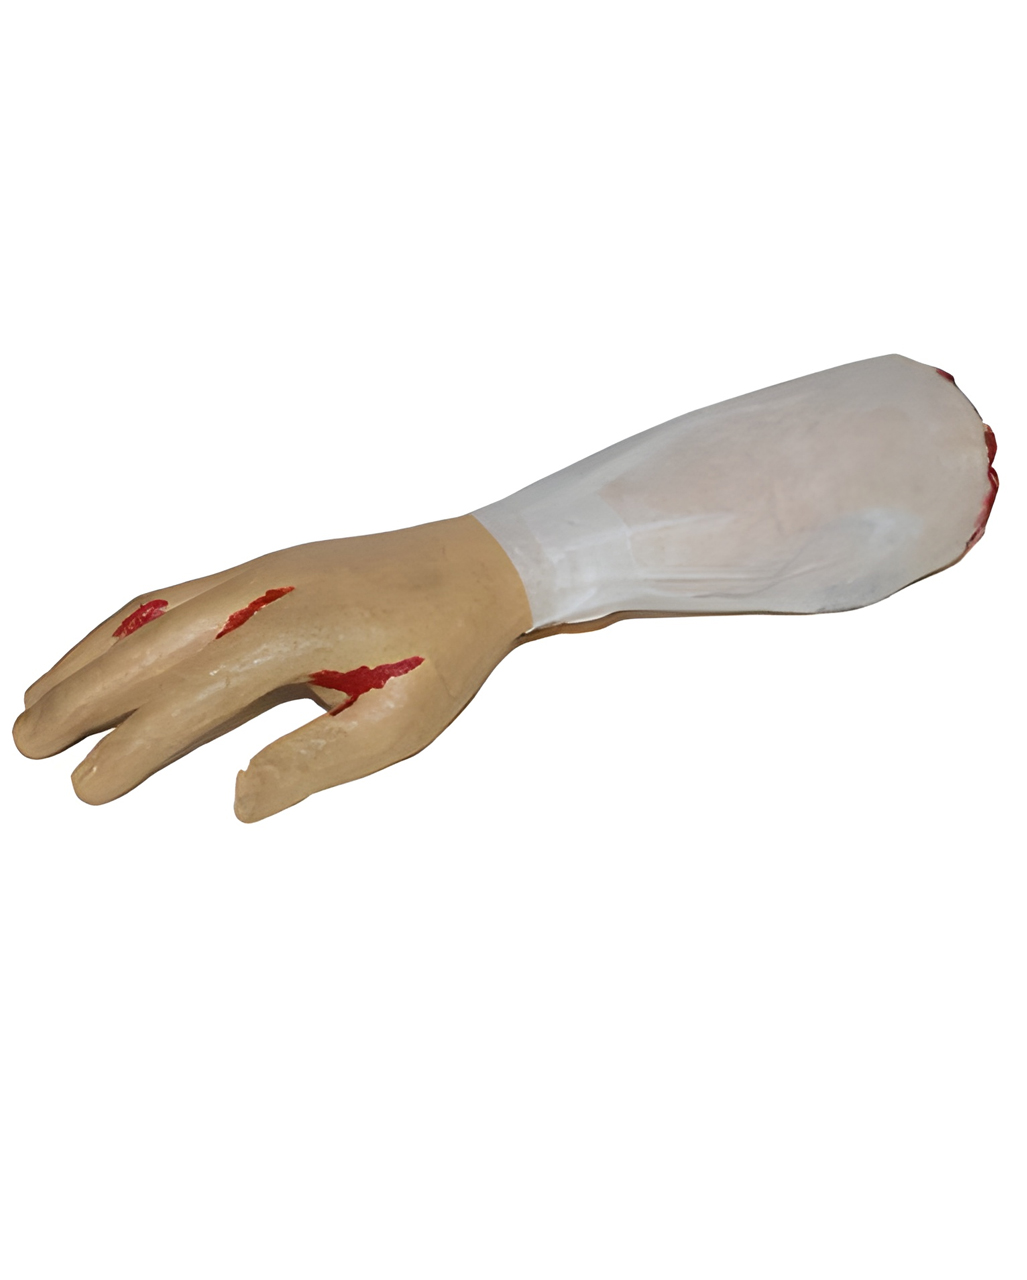 abgetrennter blutiger arm mit hemsaermel severed bloody arm with shirt sleeve halloween leichenteil 55006 01